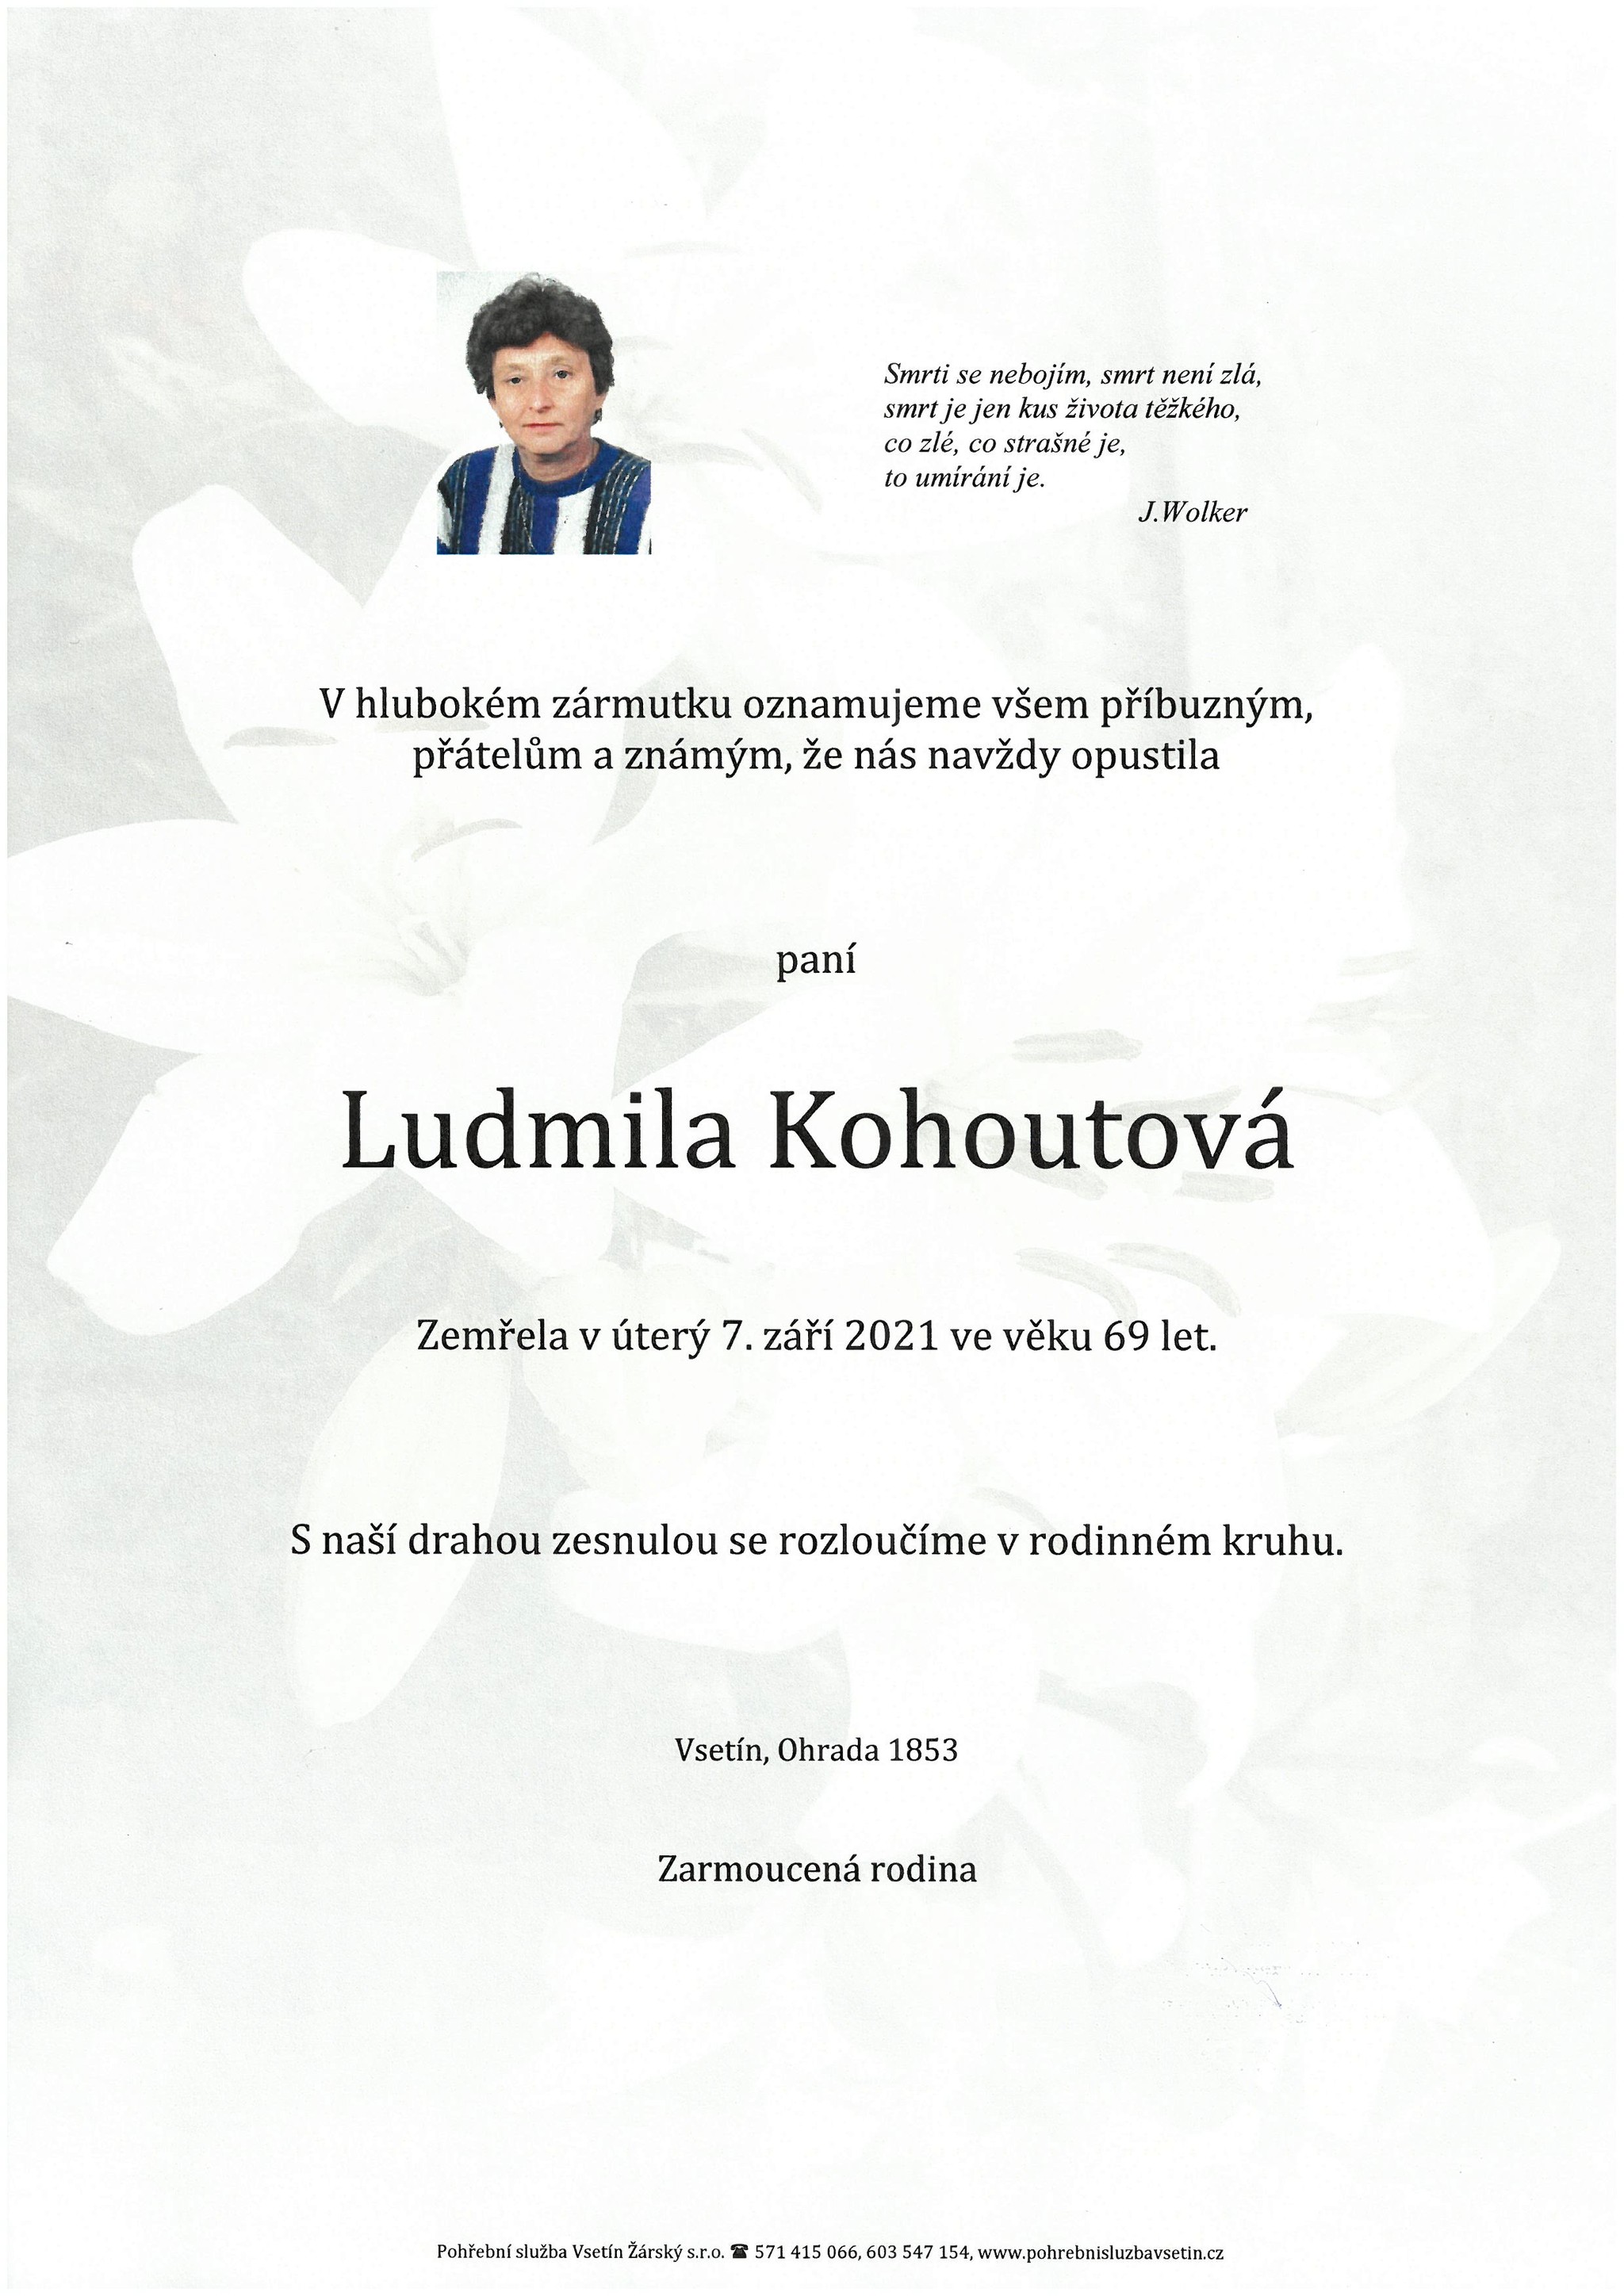 Ludmila Kohoutová